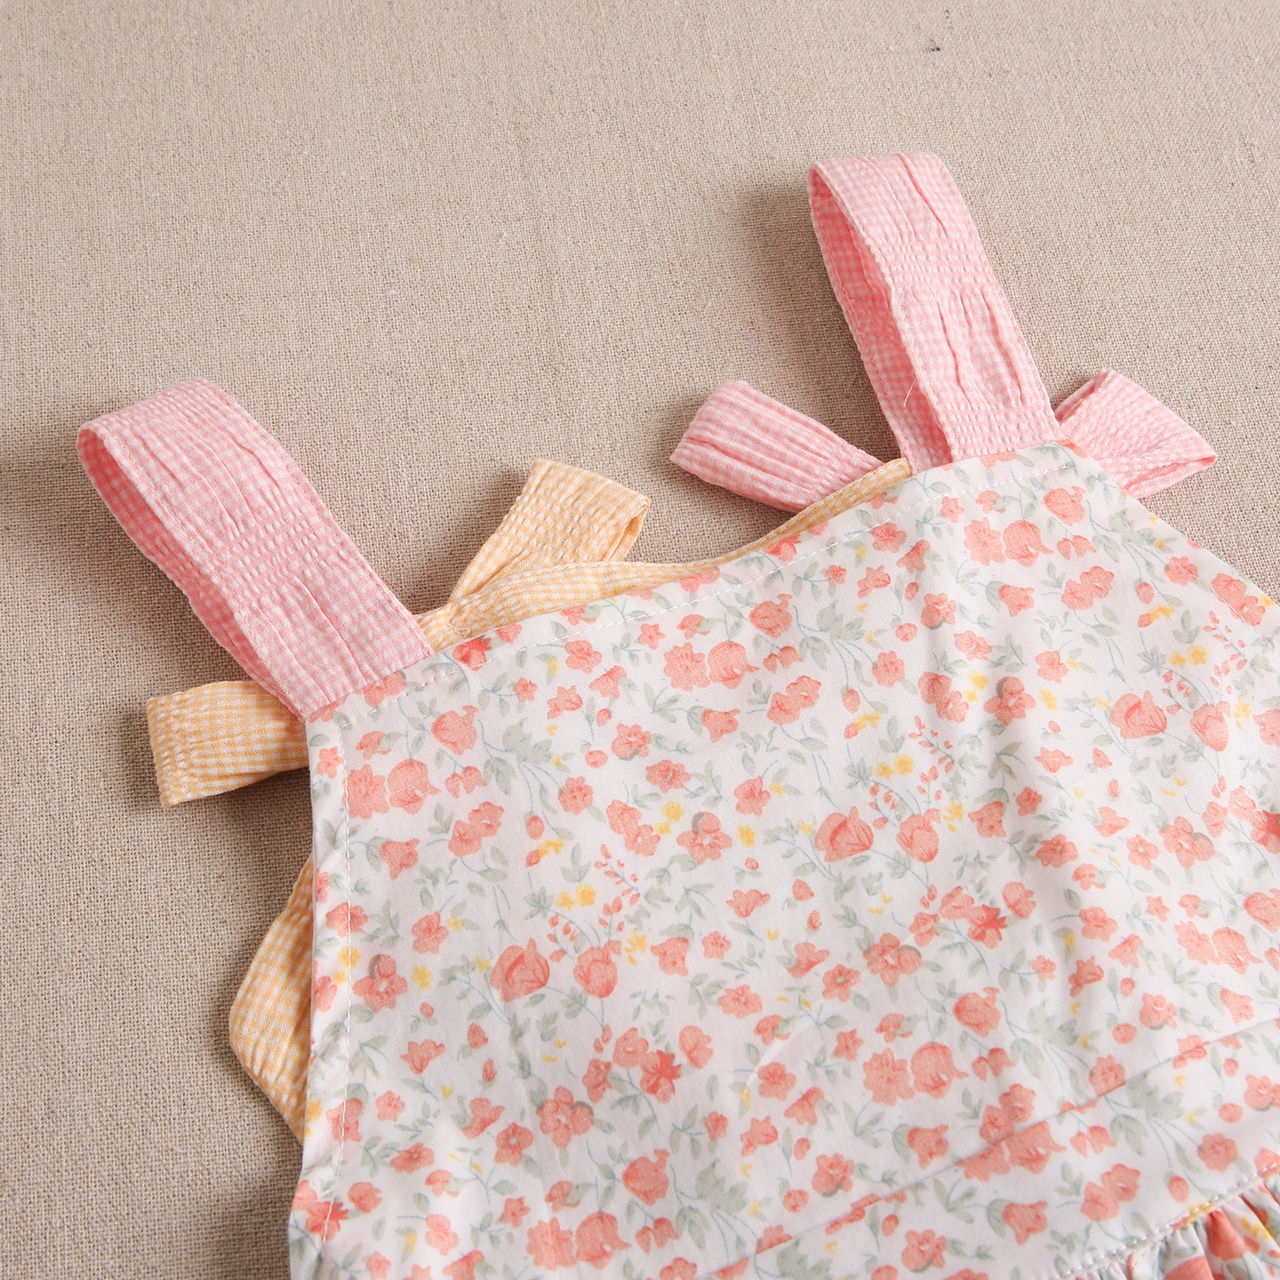 Imagen de Vestido de niña estampado de flores en tonos rosas